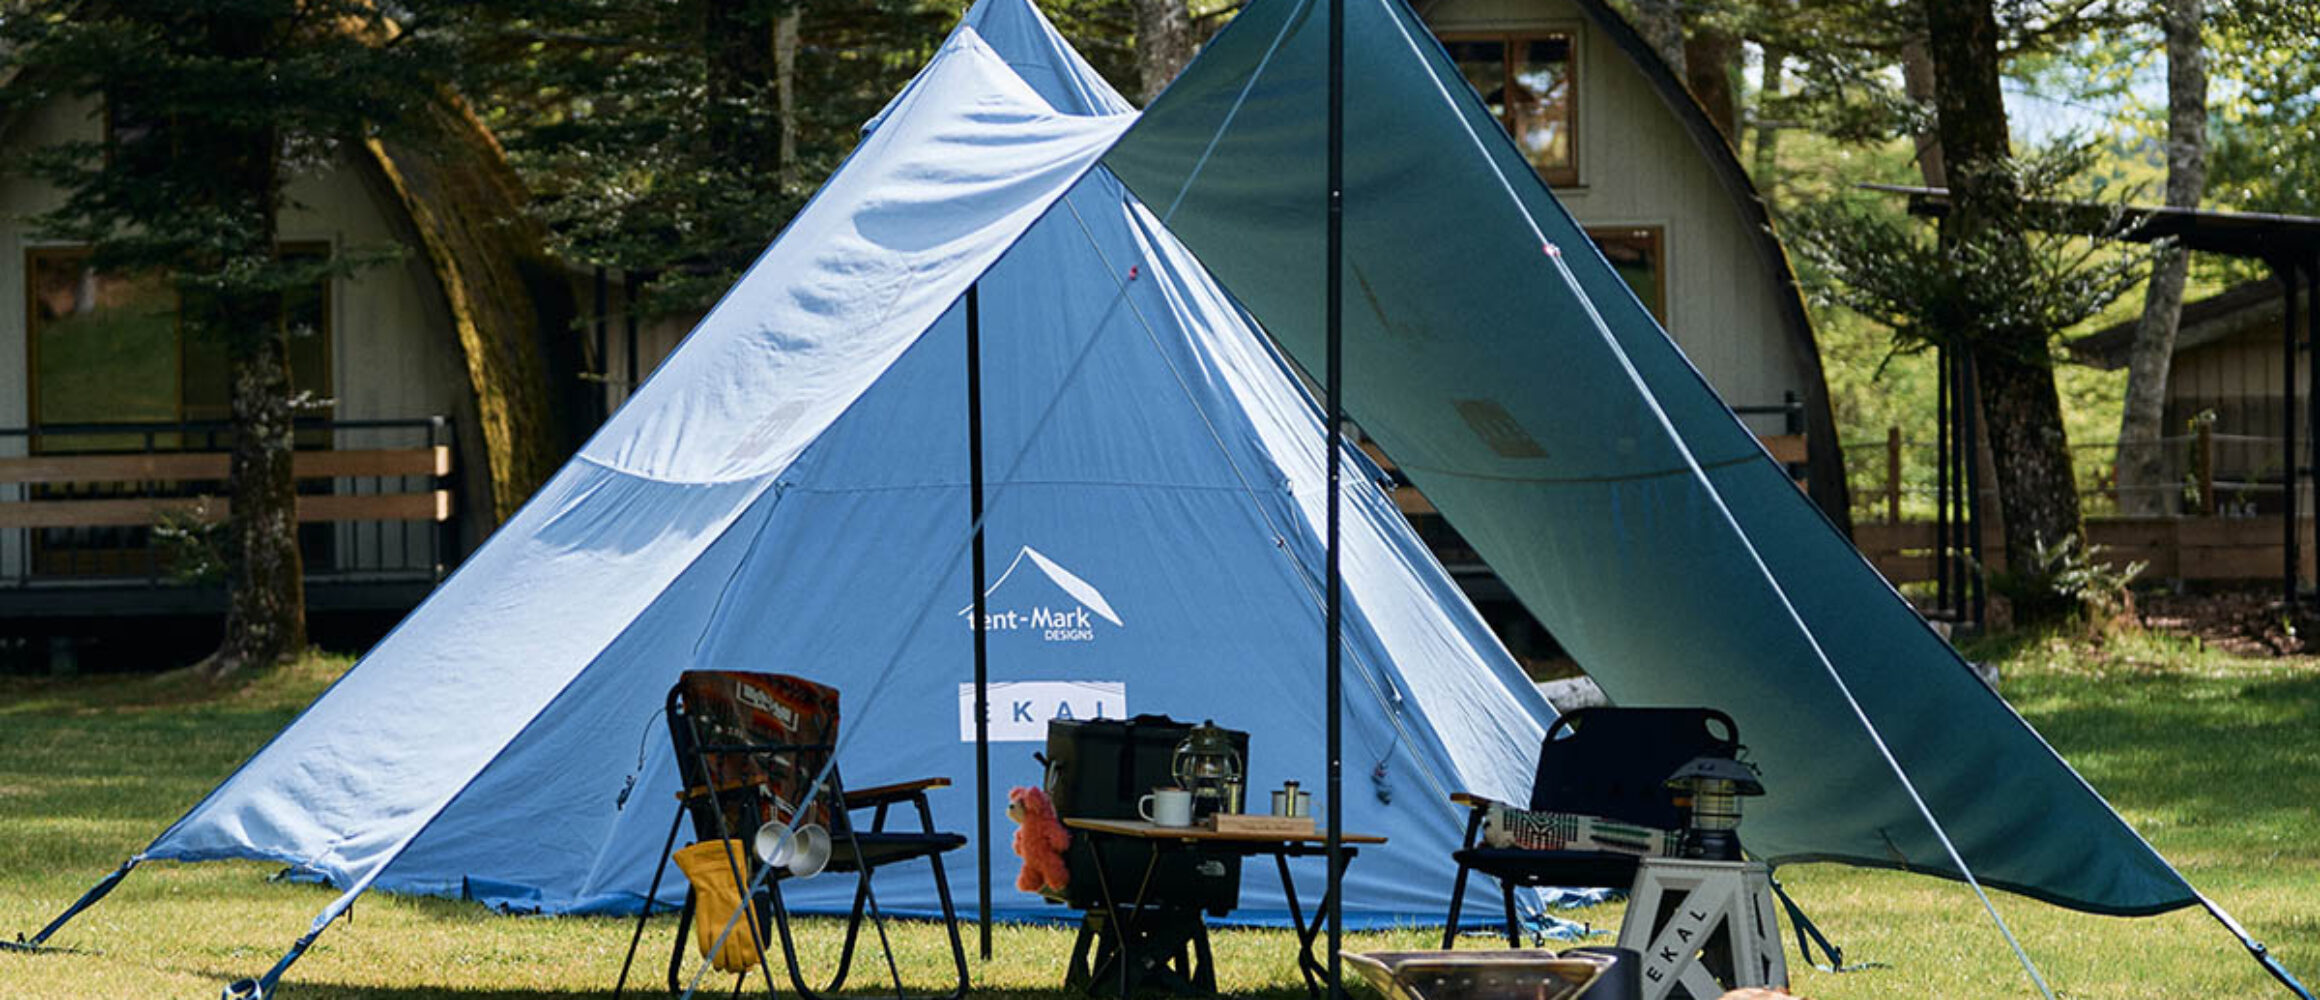 サーカスTC DX SOLUM tent-Mark DESIGNS テンマク - アウトドア